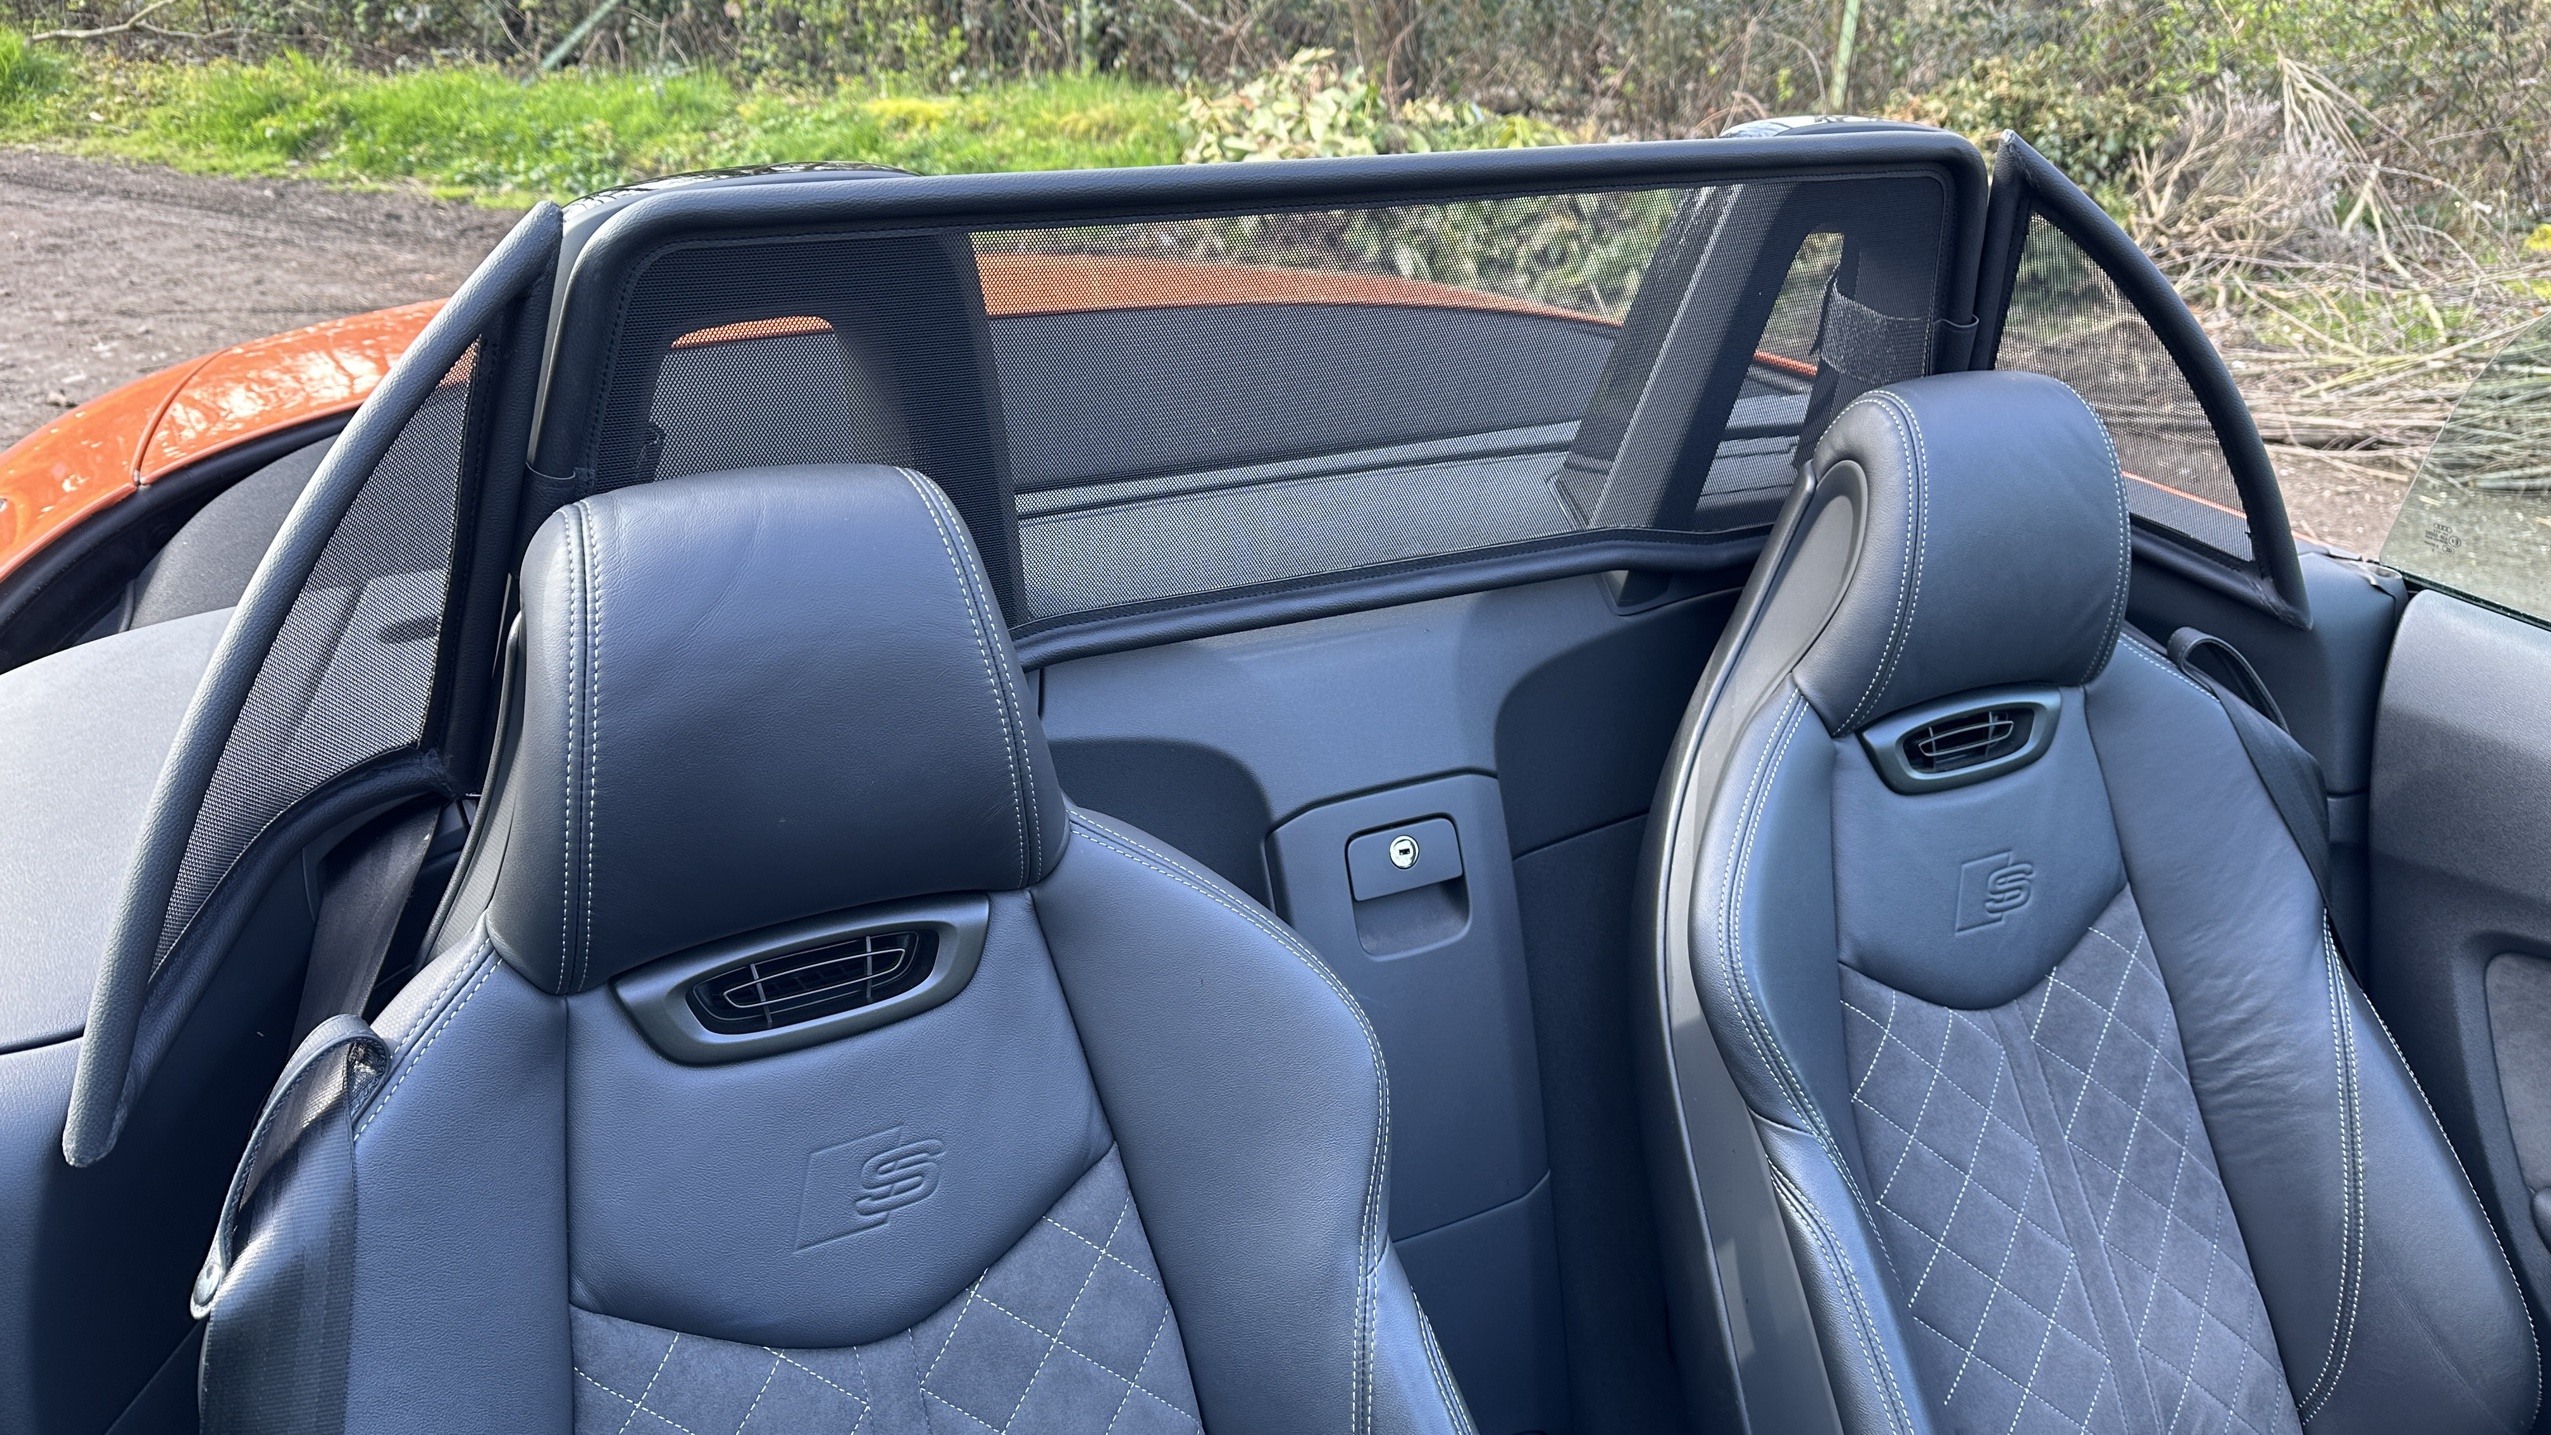 Airax Vindavvisare lämplig för Audi TT FV9 Roadster Cabrio  